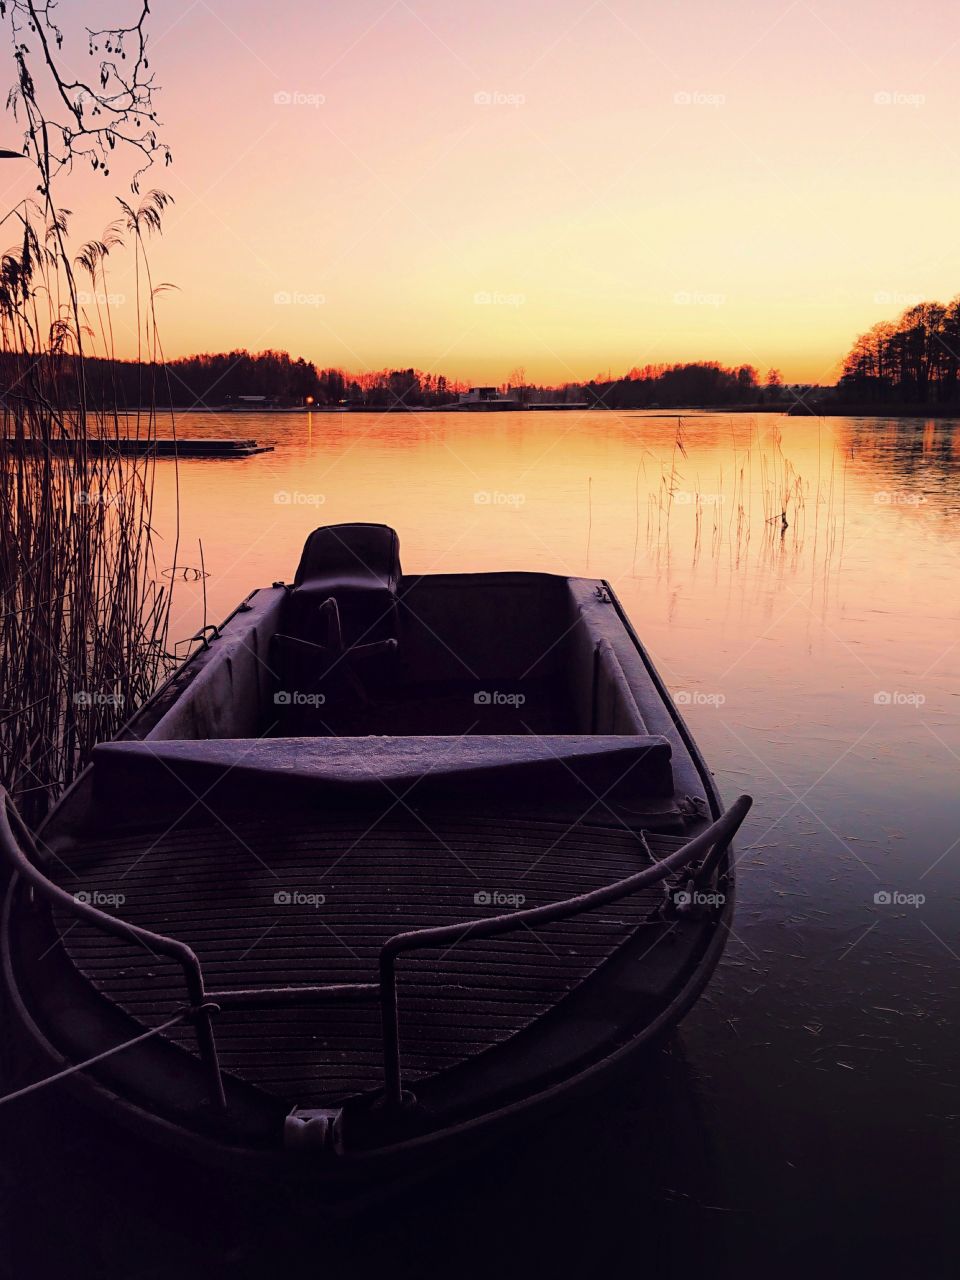 Boat. Sunset on lake